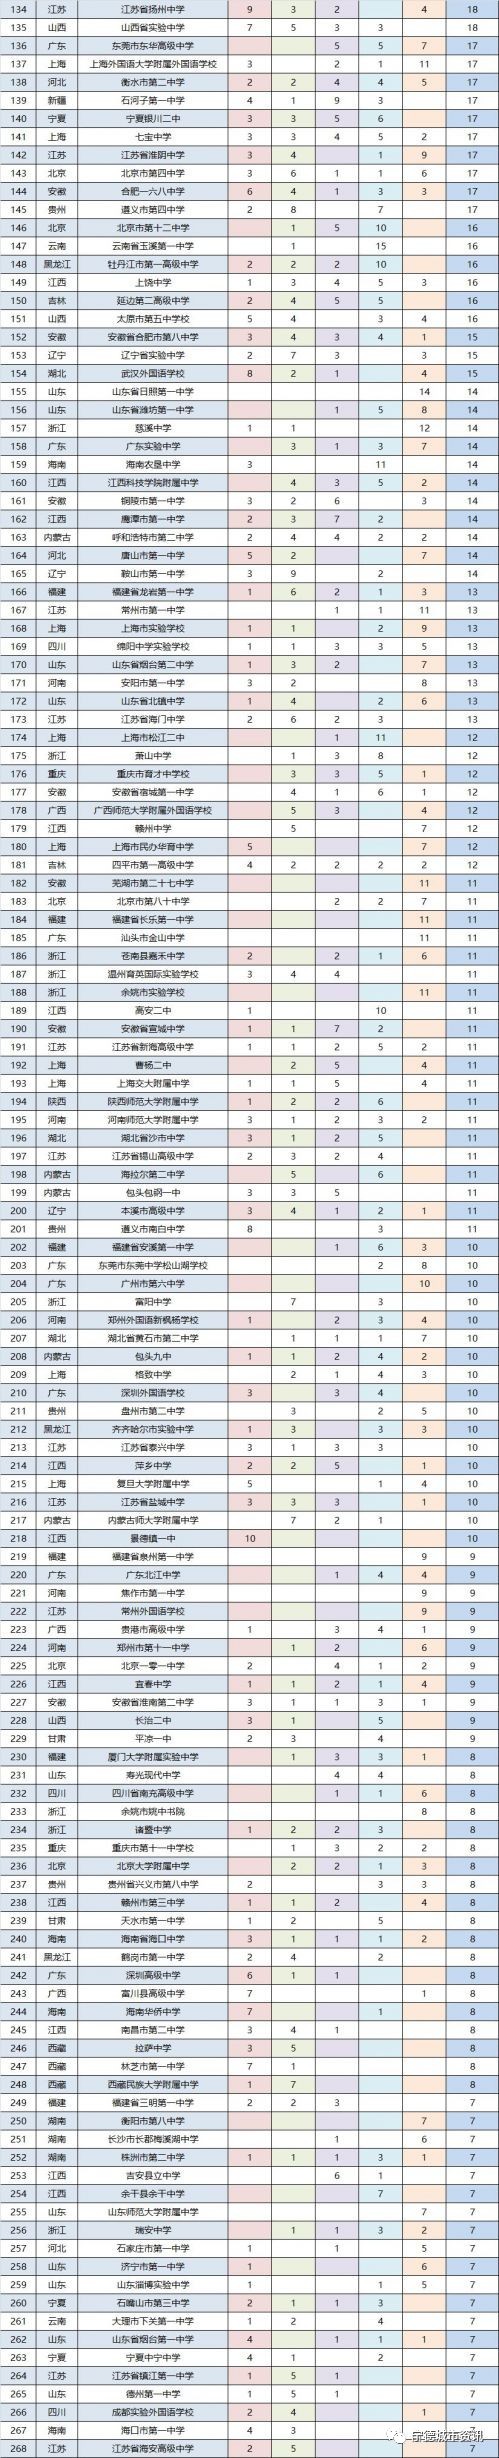 高中排行榜2017_2017中国高中百强排行榜发布!